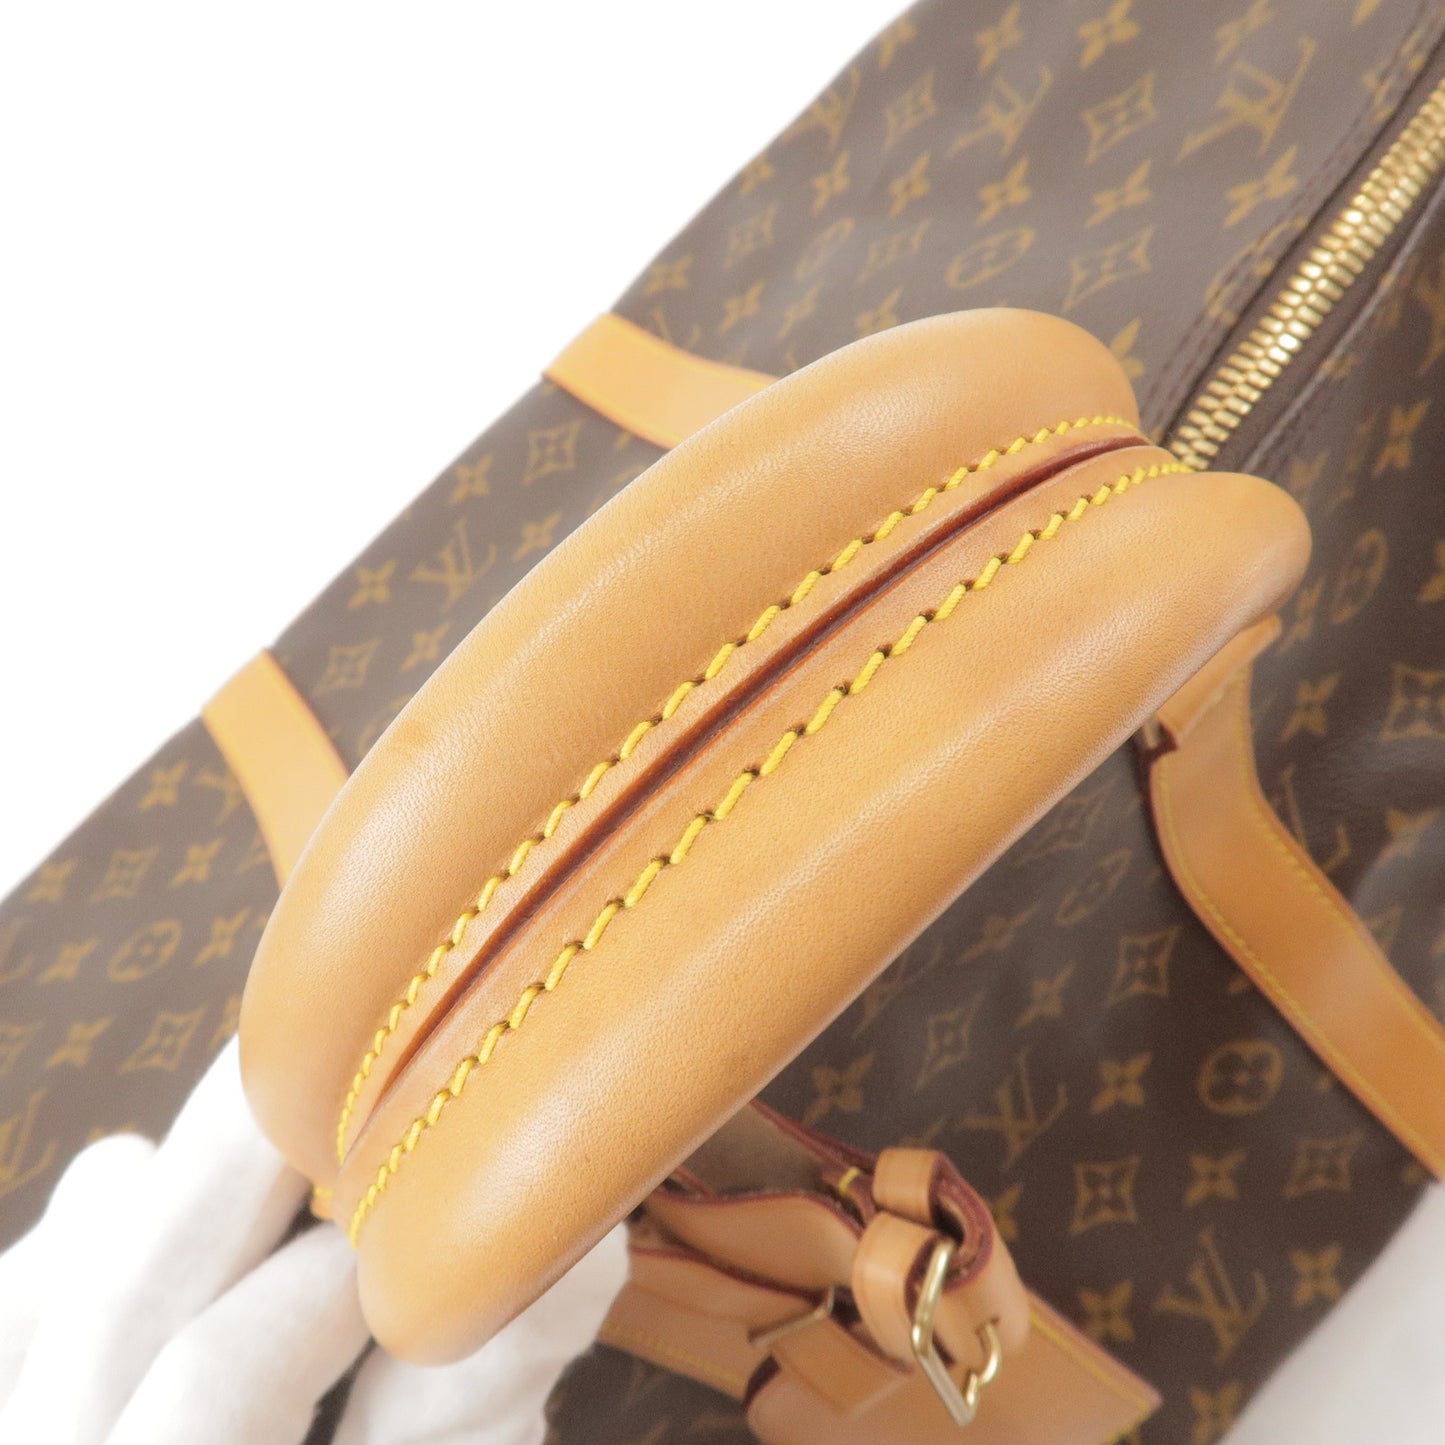 Louis - Bag - Vuitton - M41414 – dct - ep_vintage luxury Store - basket  louis vuitton - All - Monogram - Bandouliere - Keep - 55